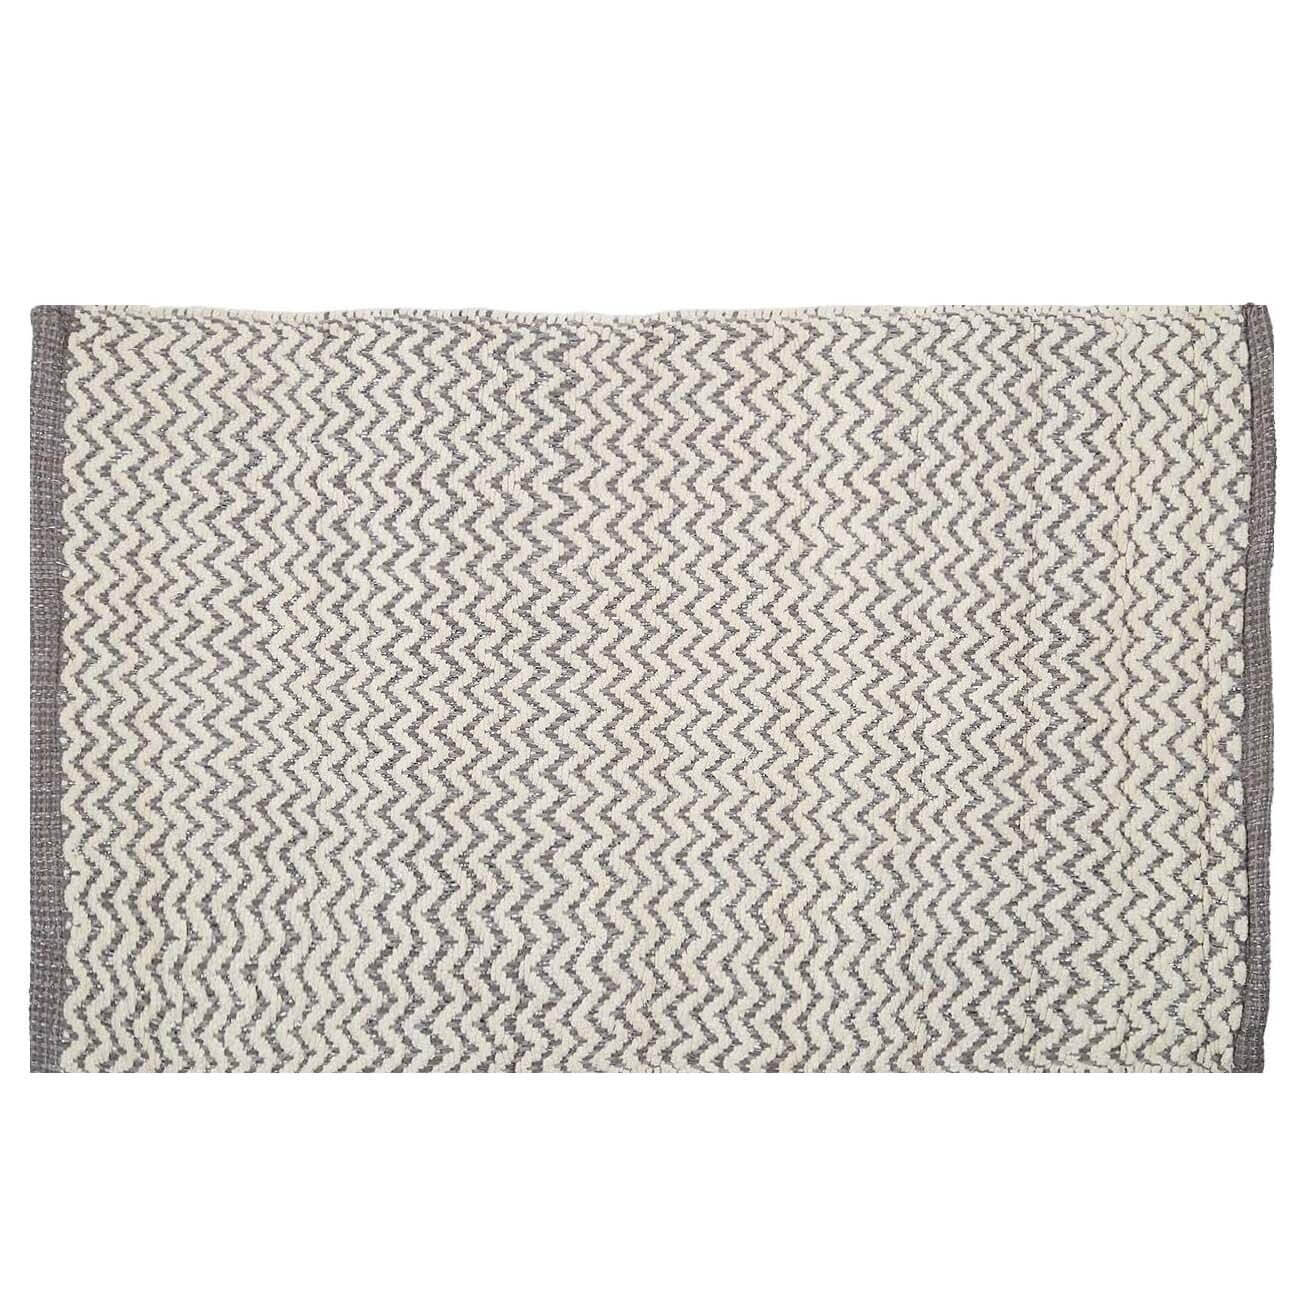 Коврик, 50х80 см, хлопок, бело-серый, Зигзаги с люрексом, Shiny threads коврик противоскольязщий 30×15 см supreme